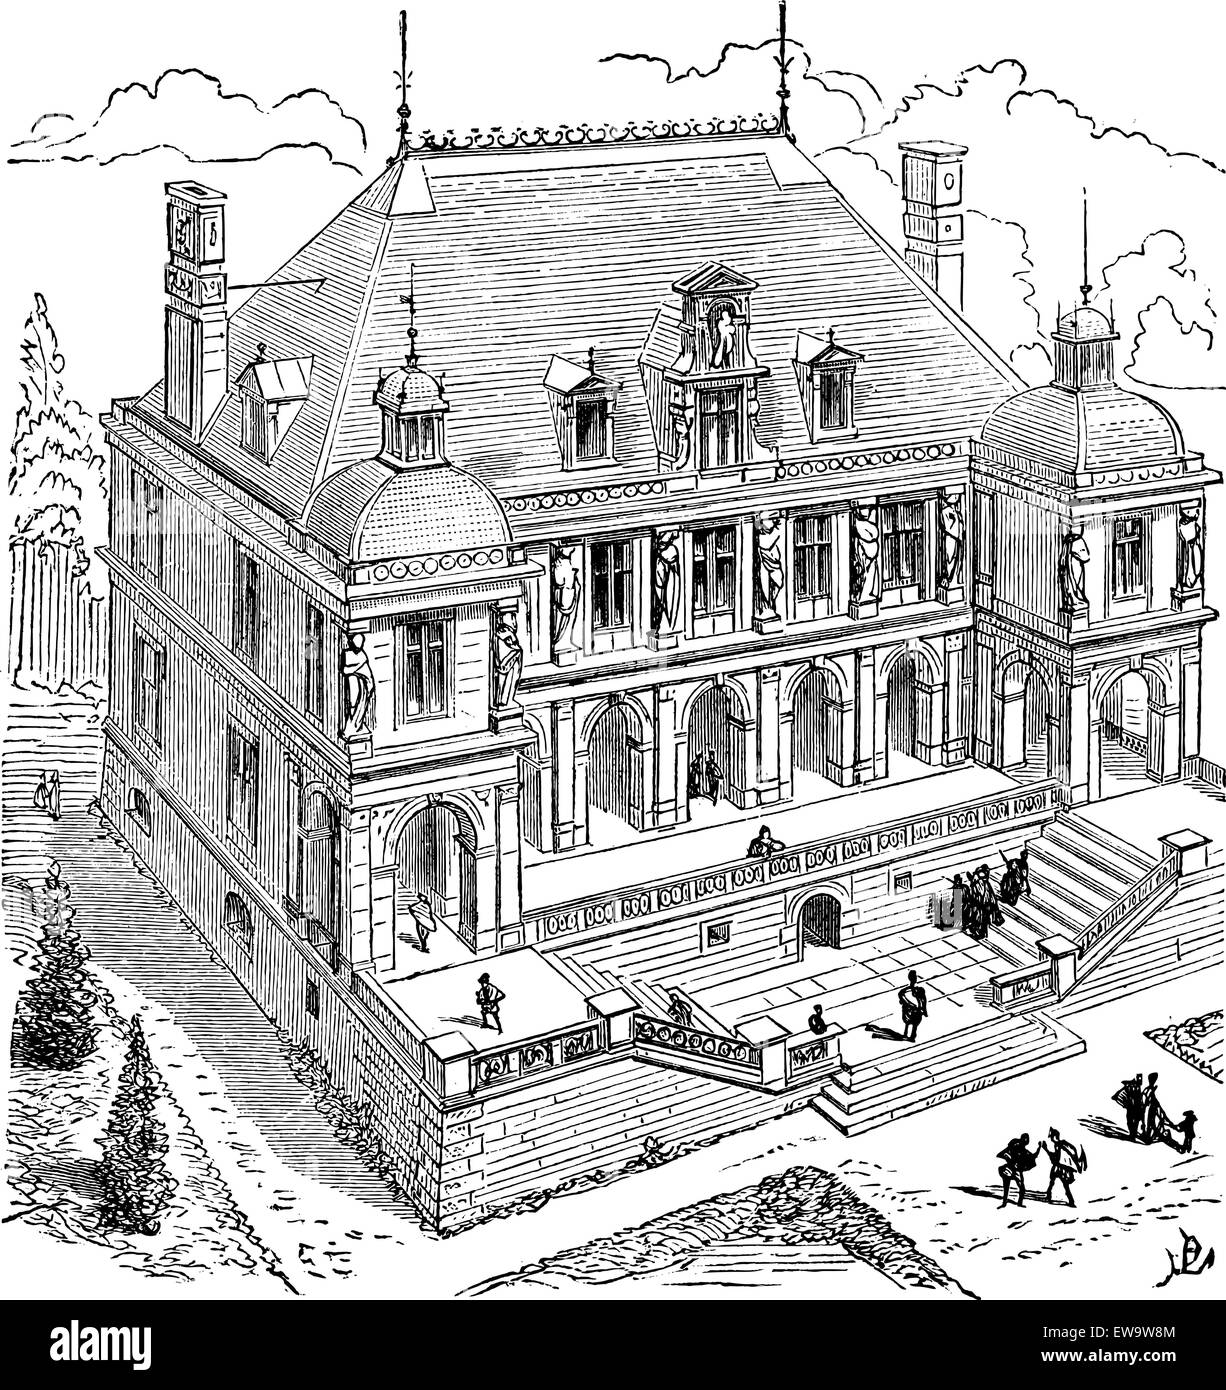 Französische Renaissance Hotel, graviert Vintage Illustration. Industrielle Enzyklopädie - E.O Lami - 1875 Stock Vektor